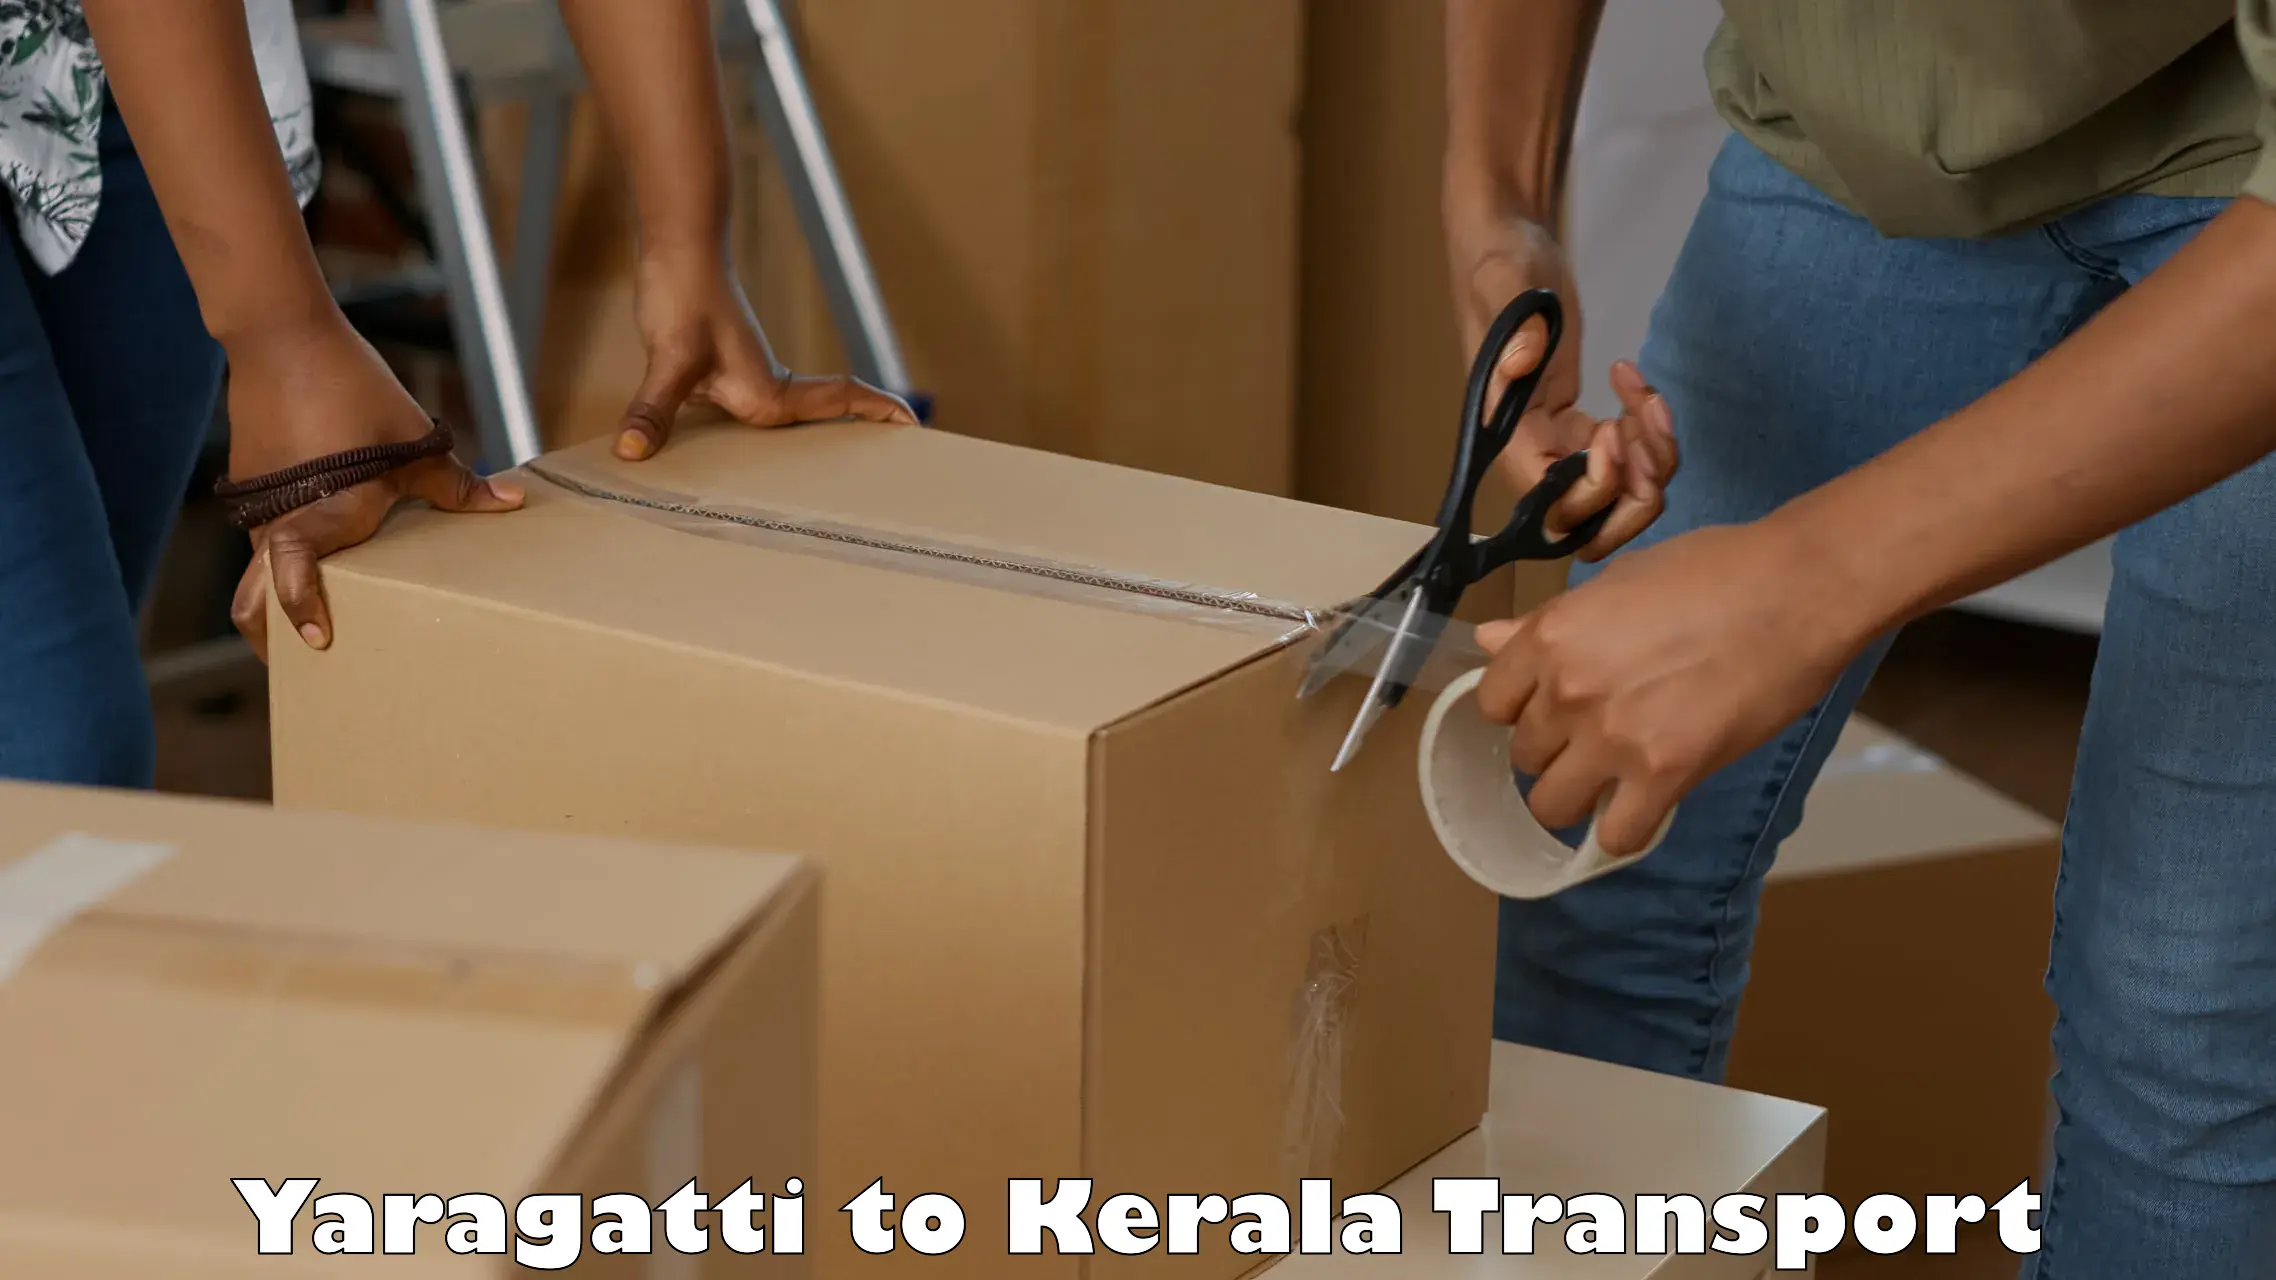 Nearest transport service Yaragatti to Calicut University Malappuram